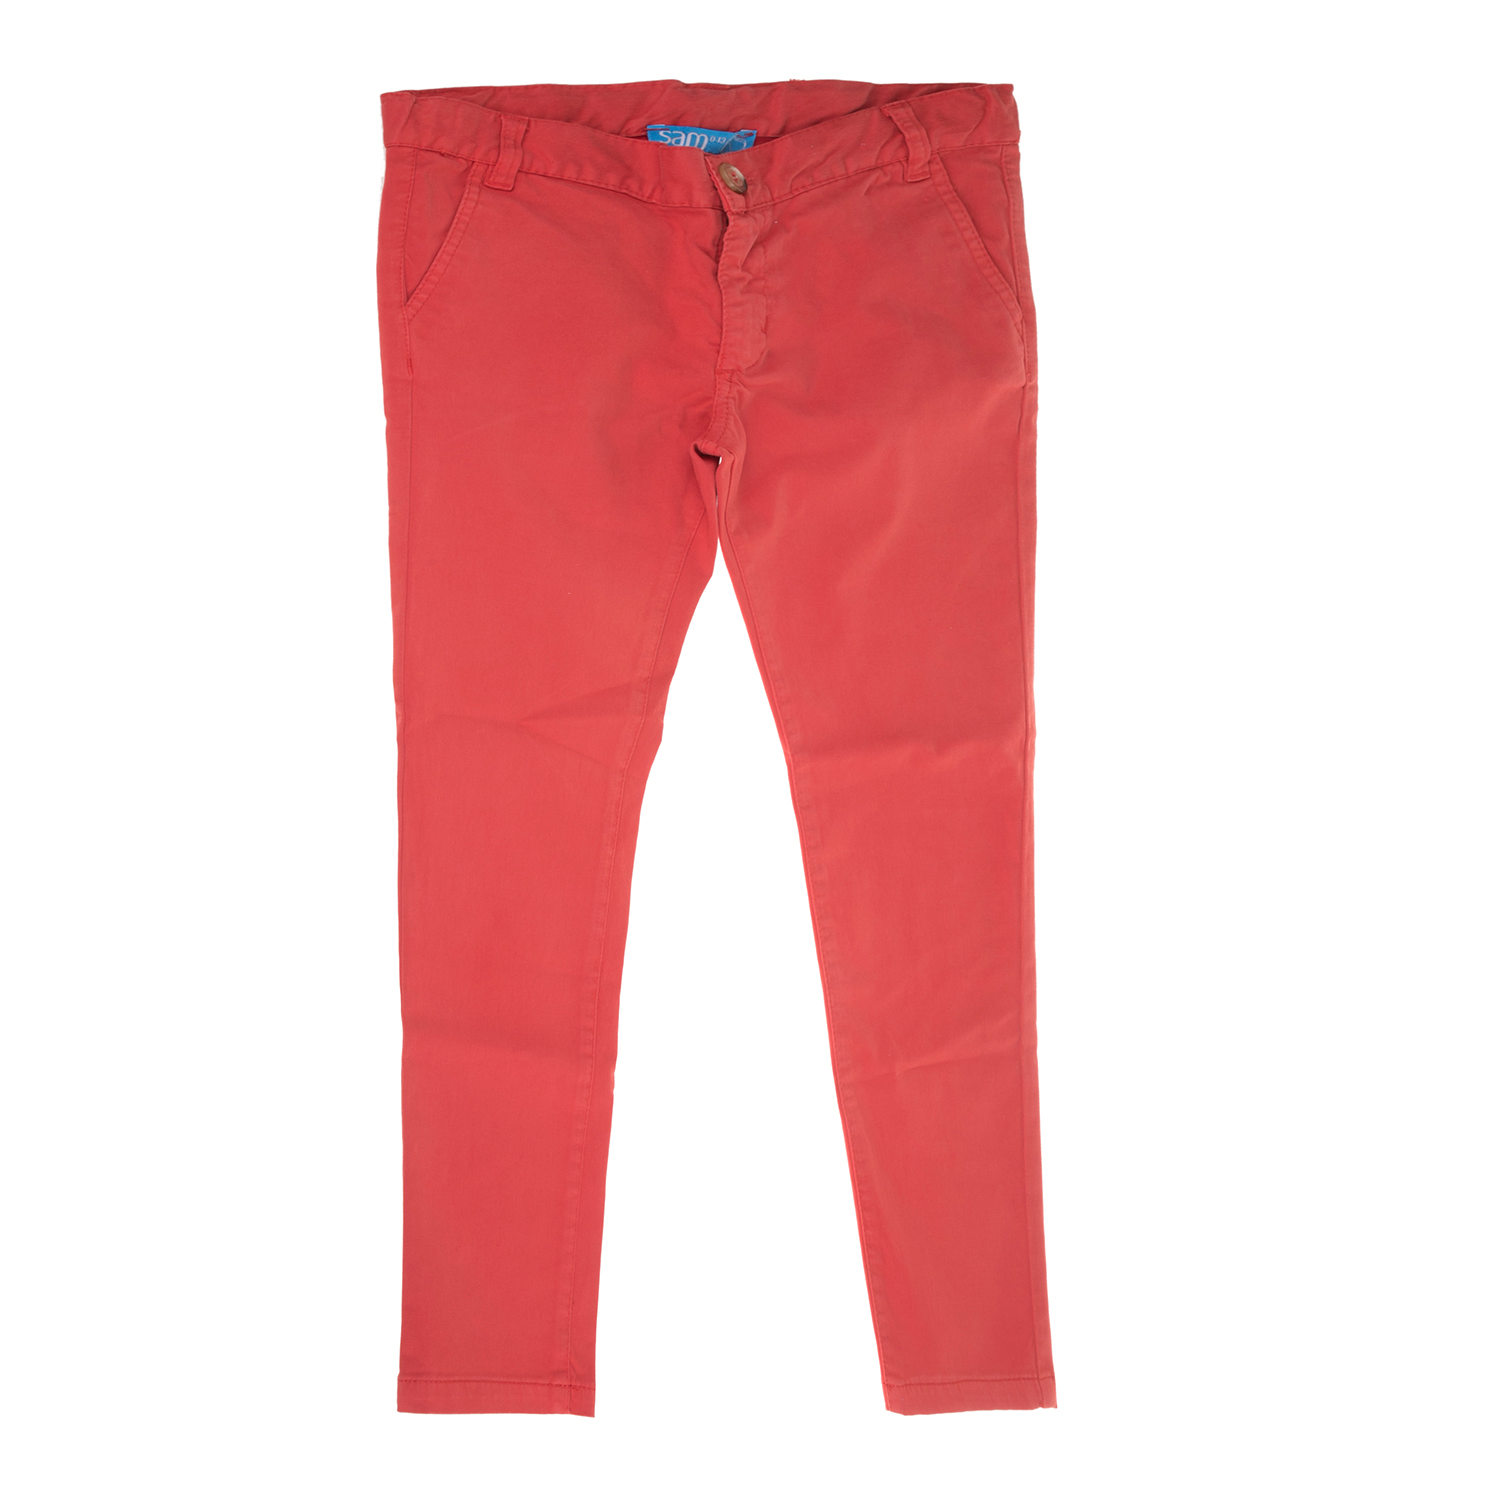 SAM 0-13 Παιδικό παντελόνι για μεγάλα αγόρια SAM 0-13 κόκκινο